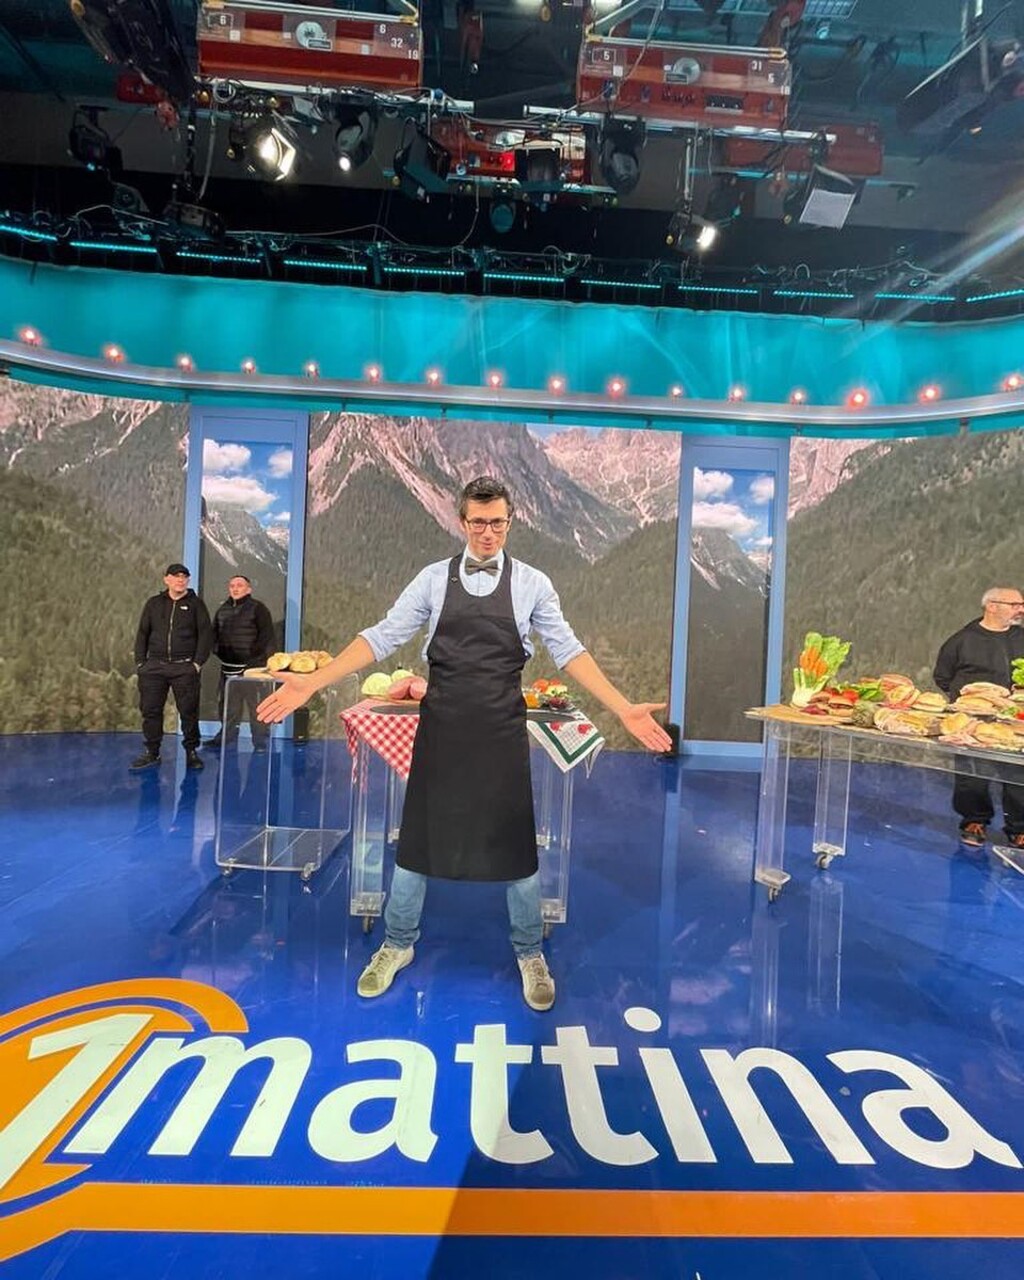 Gourmet sandwich: chef/non-chef Daniele Reponi guest on the RAI television program “1Mattina”